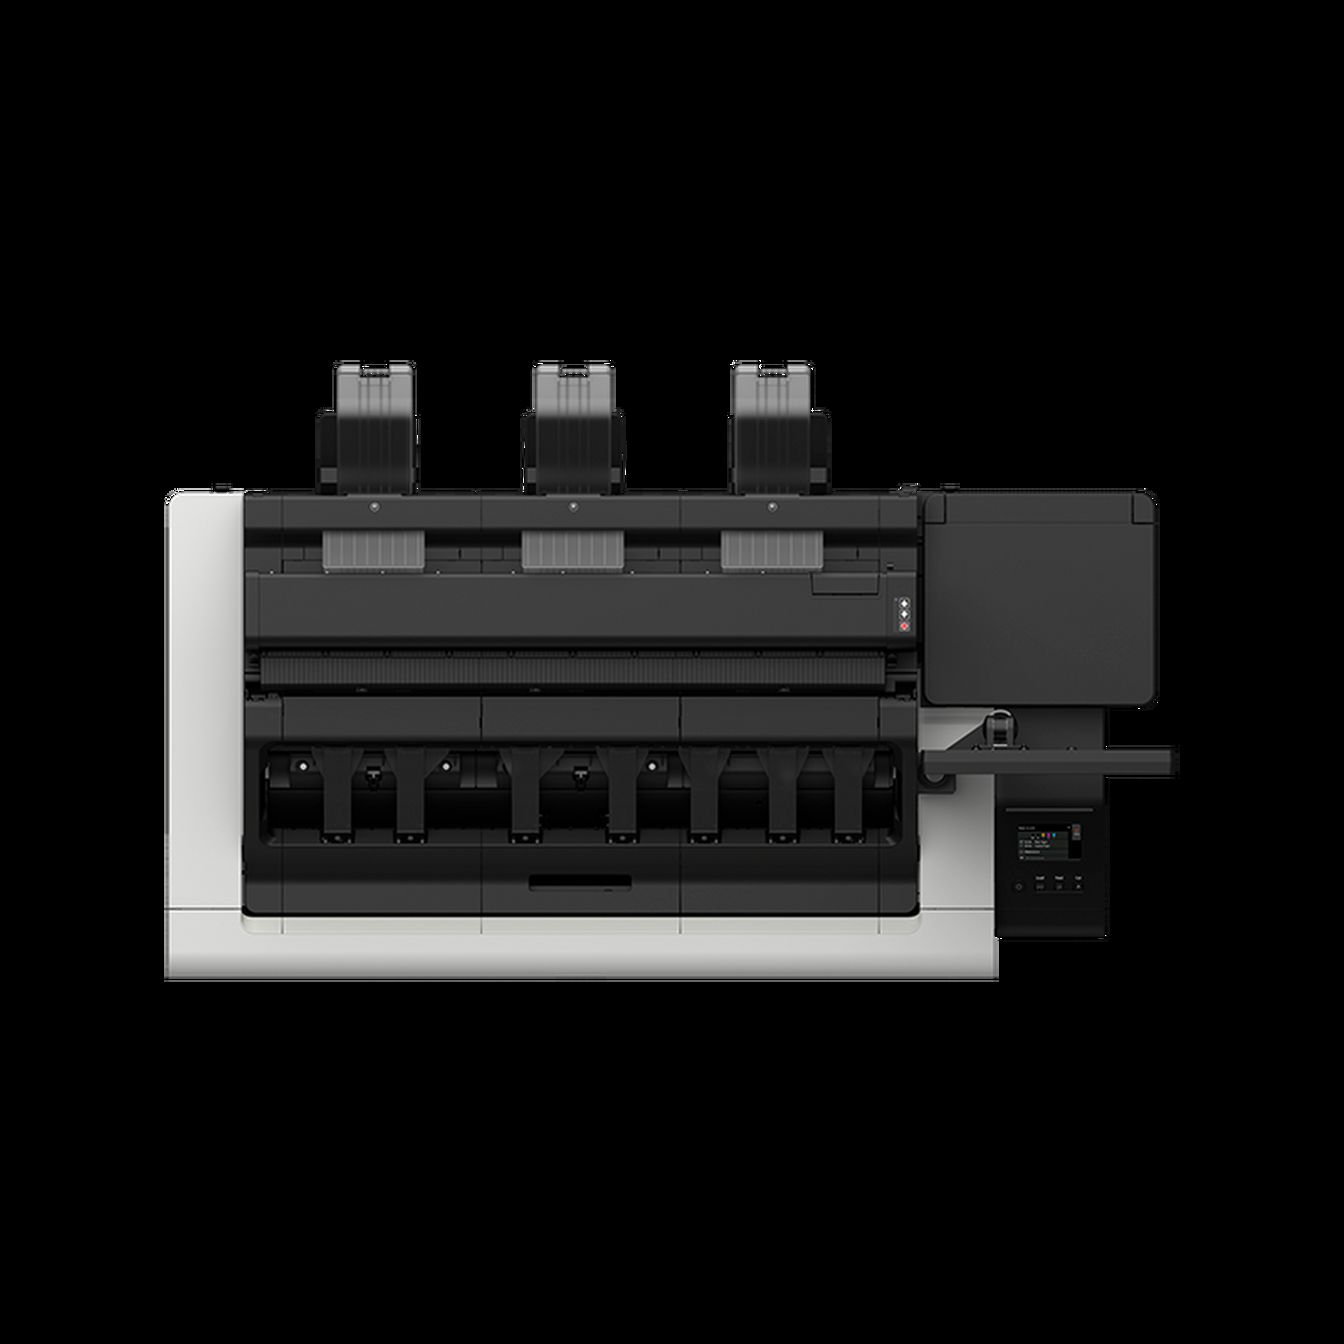 imprimantes-grand-format - imprimante-multifonction-grand-format - TZ-30000 MFP Z36 - canon - Tinsal - Algérie